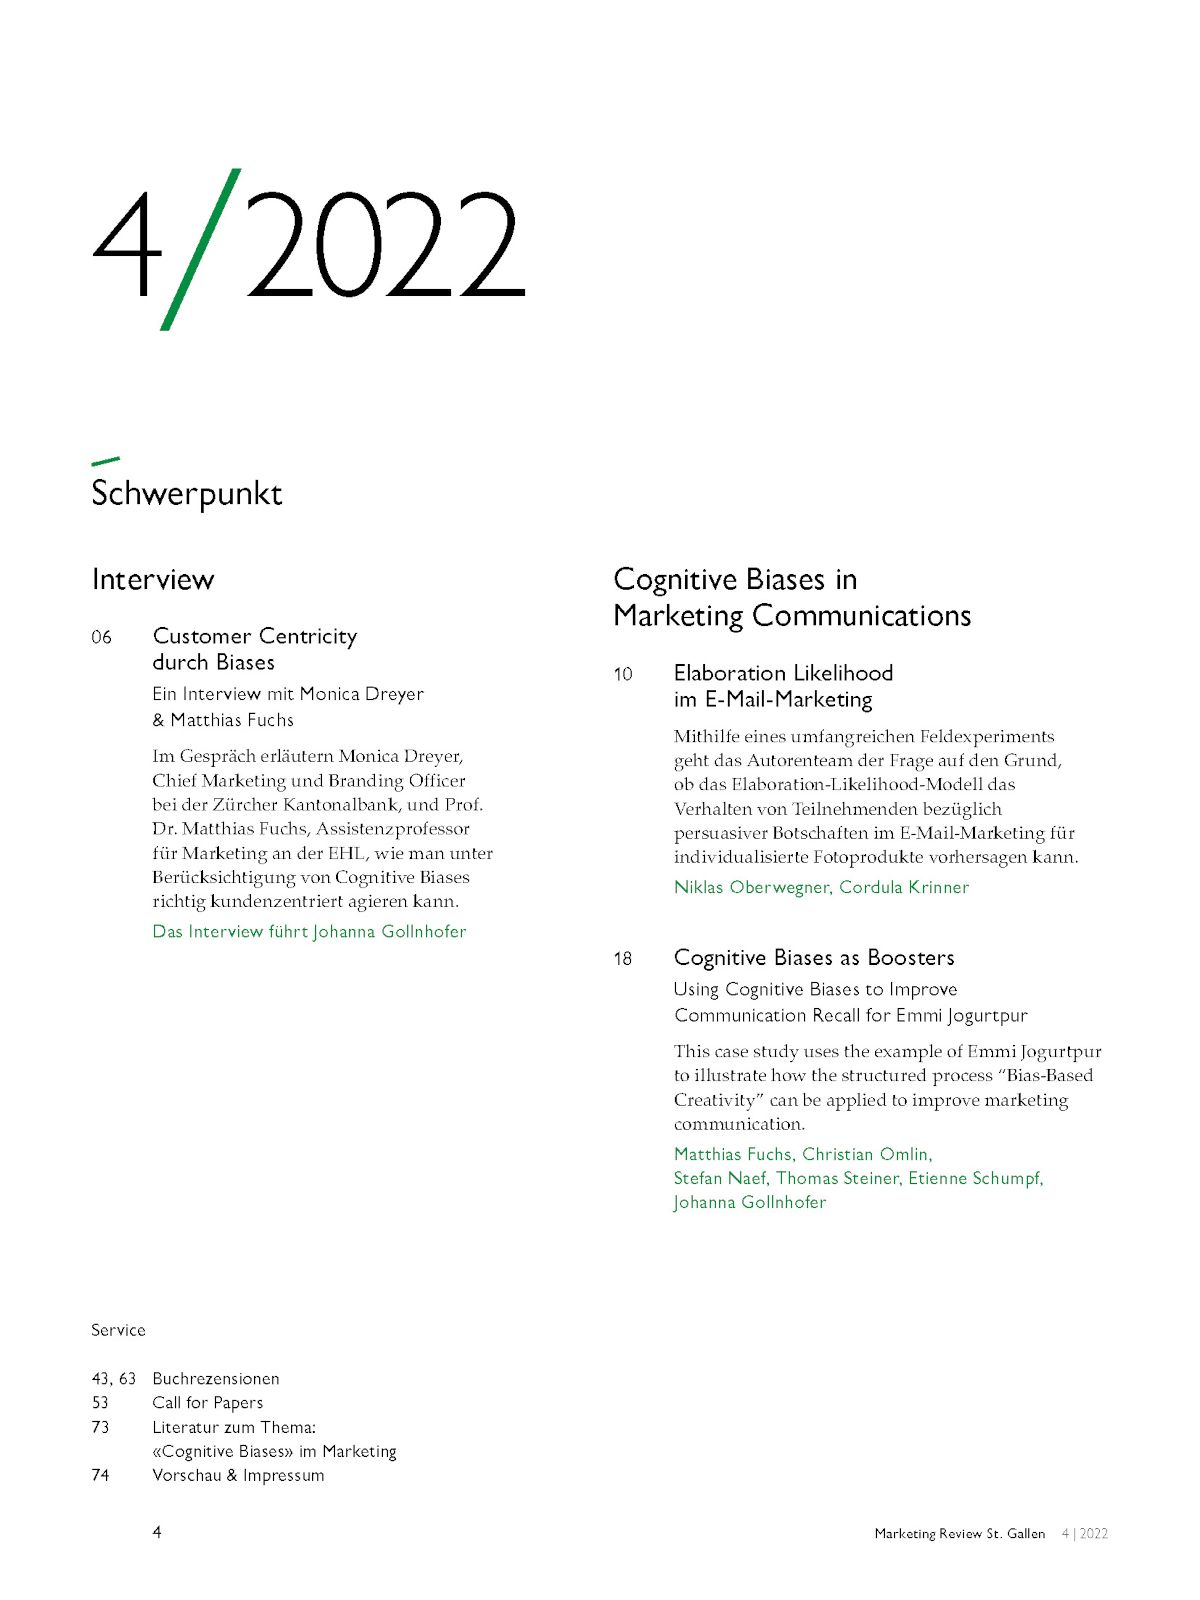 Marketing Review 4-2022 Inhaltsverzeichnis